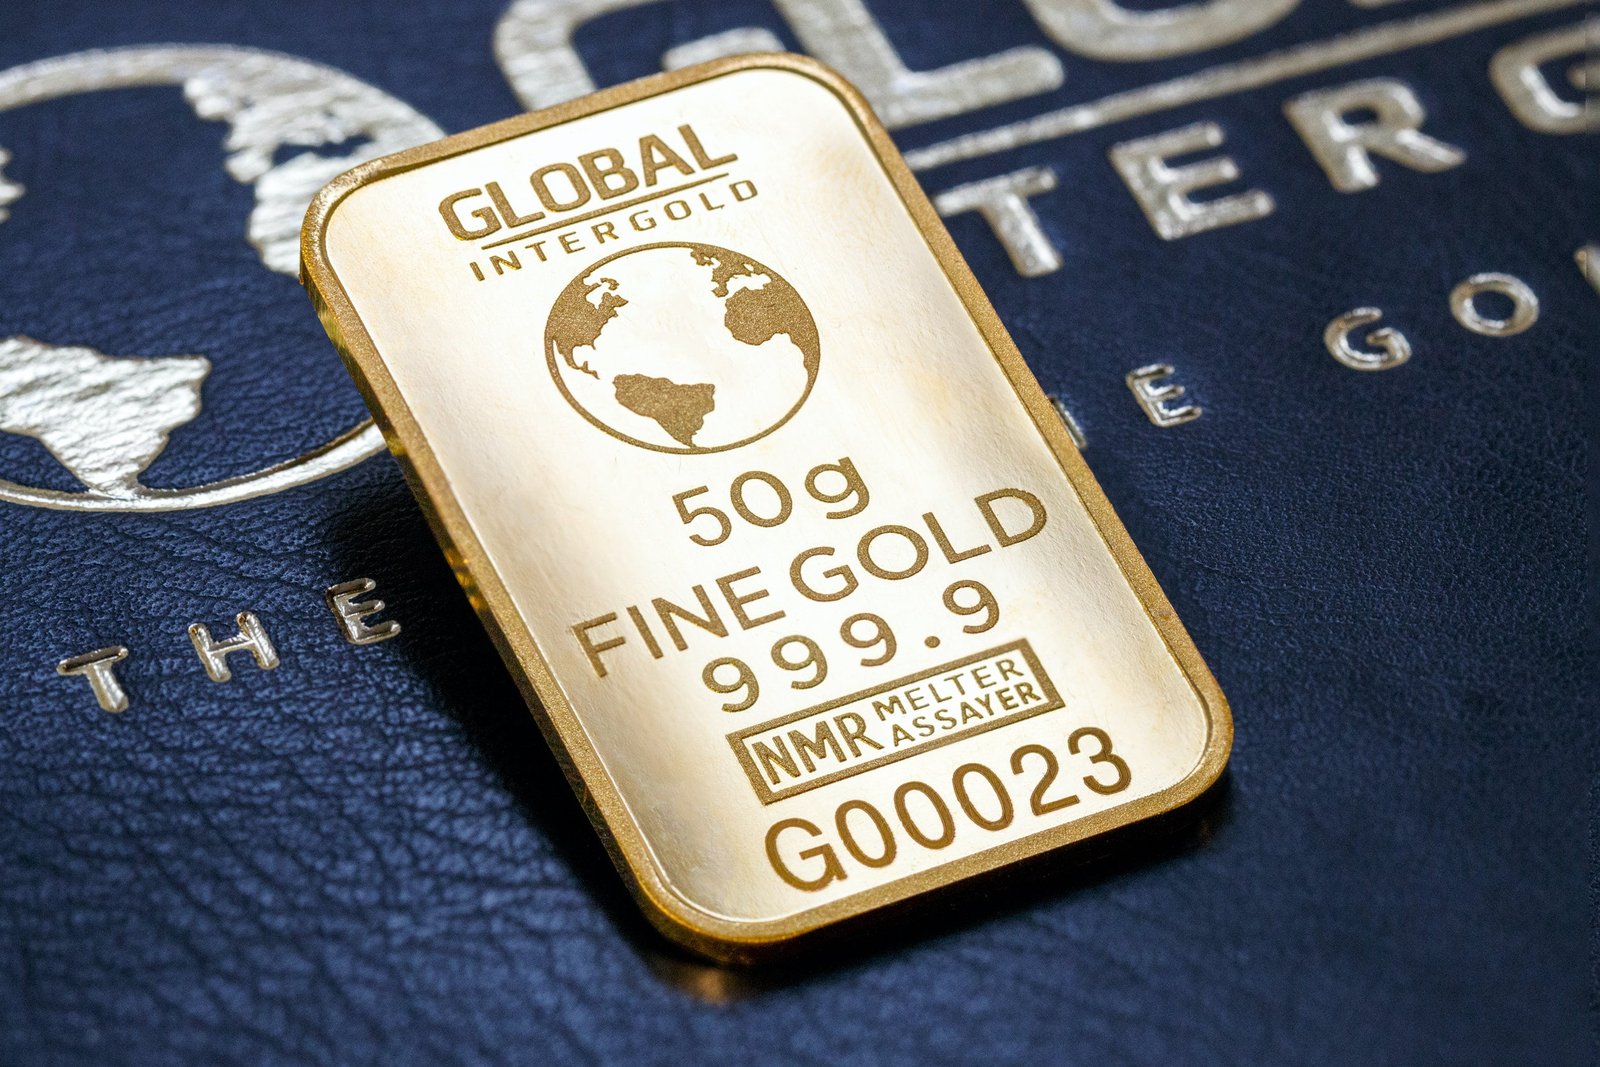 A 50g gold bar